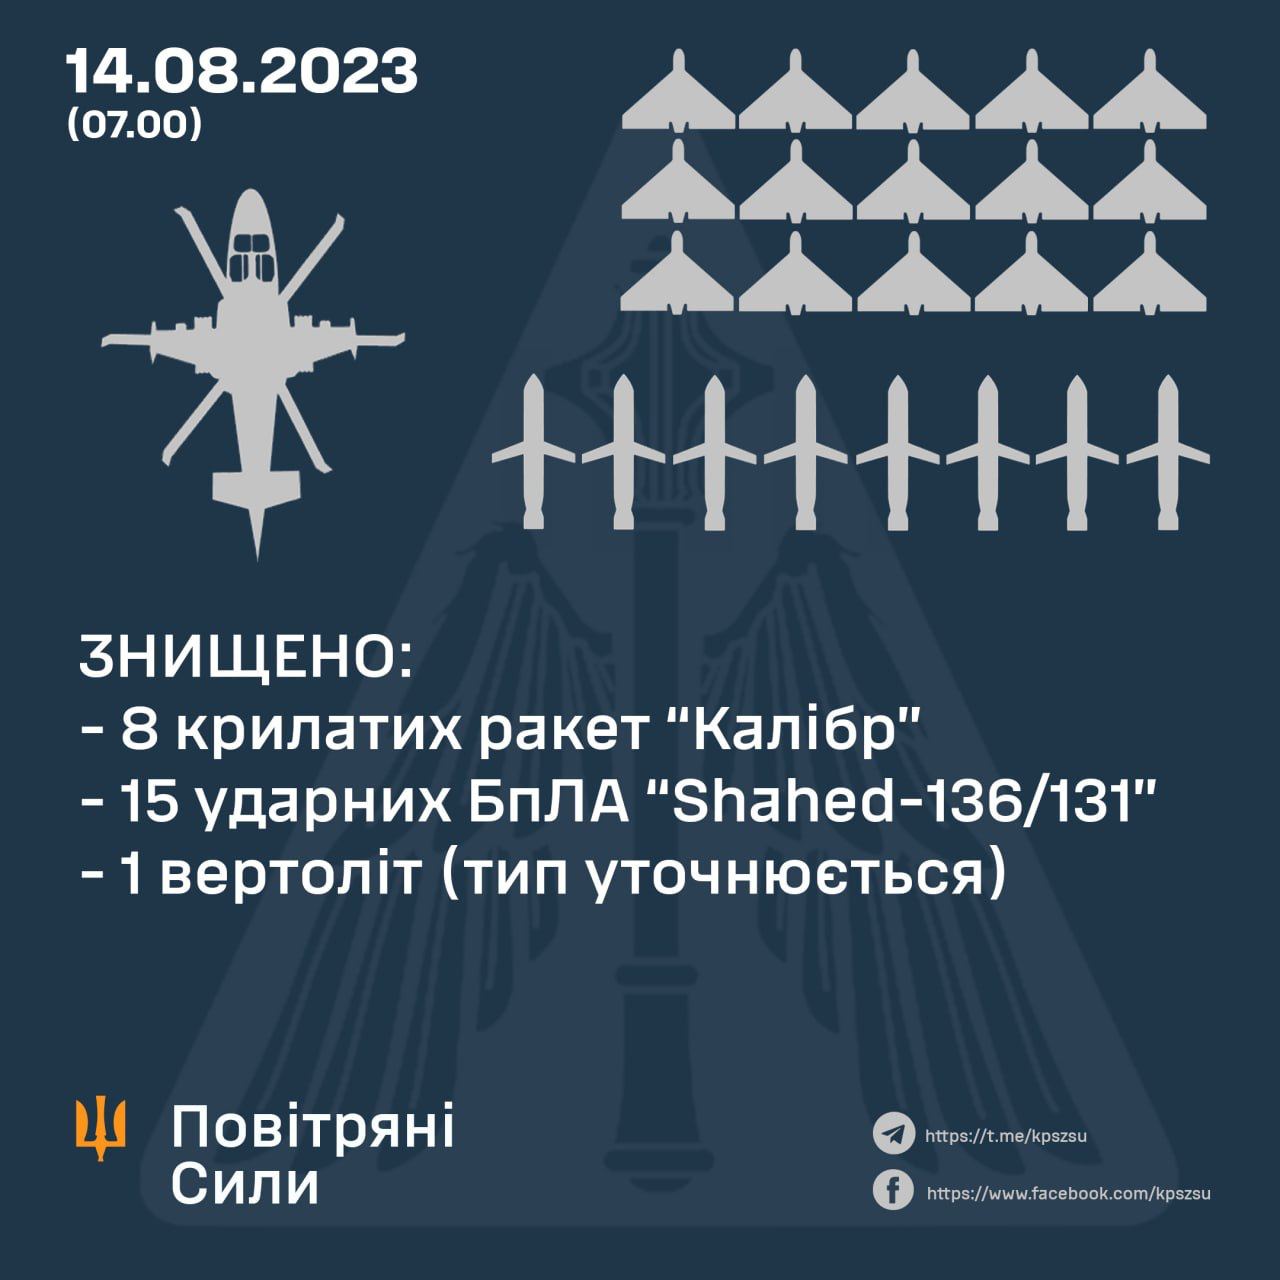 Этой ночью в небе над Украиной были уничтожены восемь вражеских крылатых ракет «Калибр», 15 ударных беспилотников типа Shahed-136/131, а также один вертолёт, сообщают Воздушные силы ВСУ